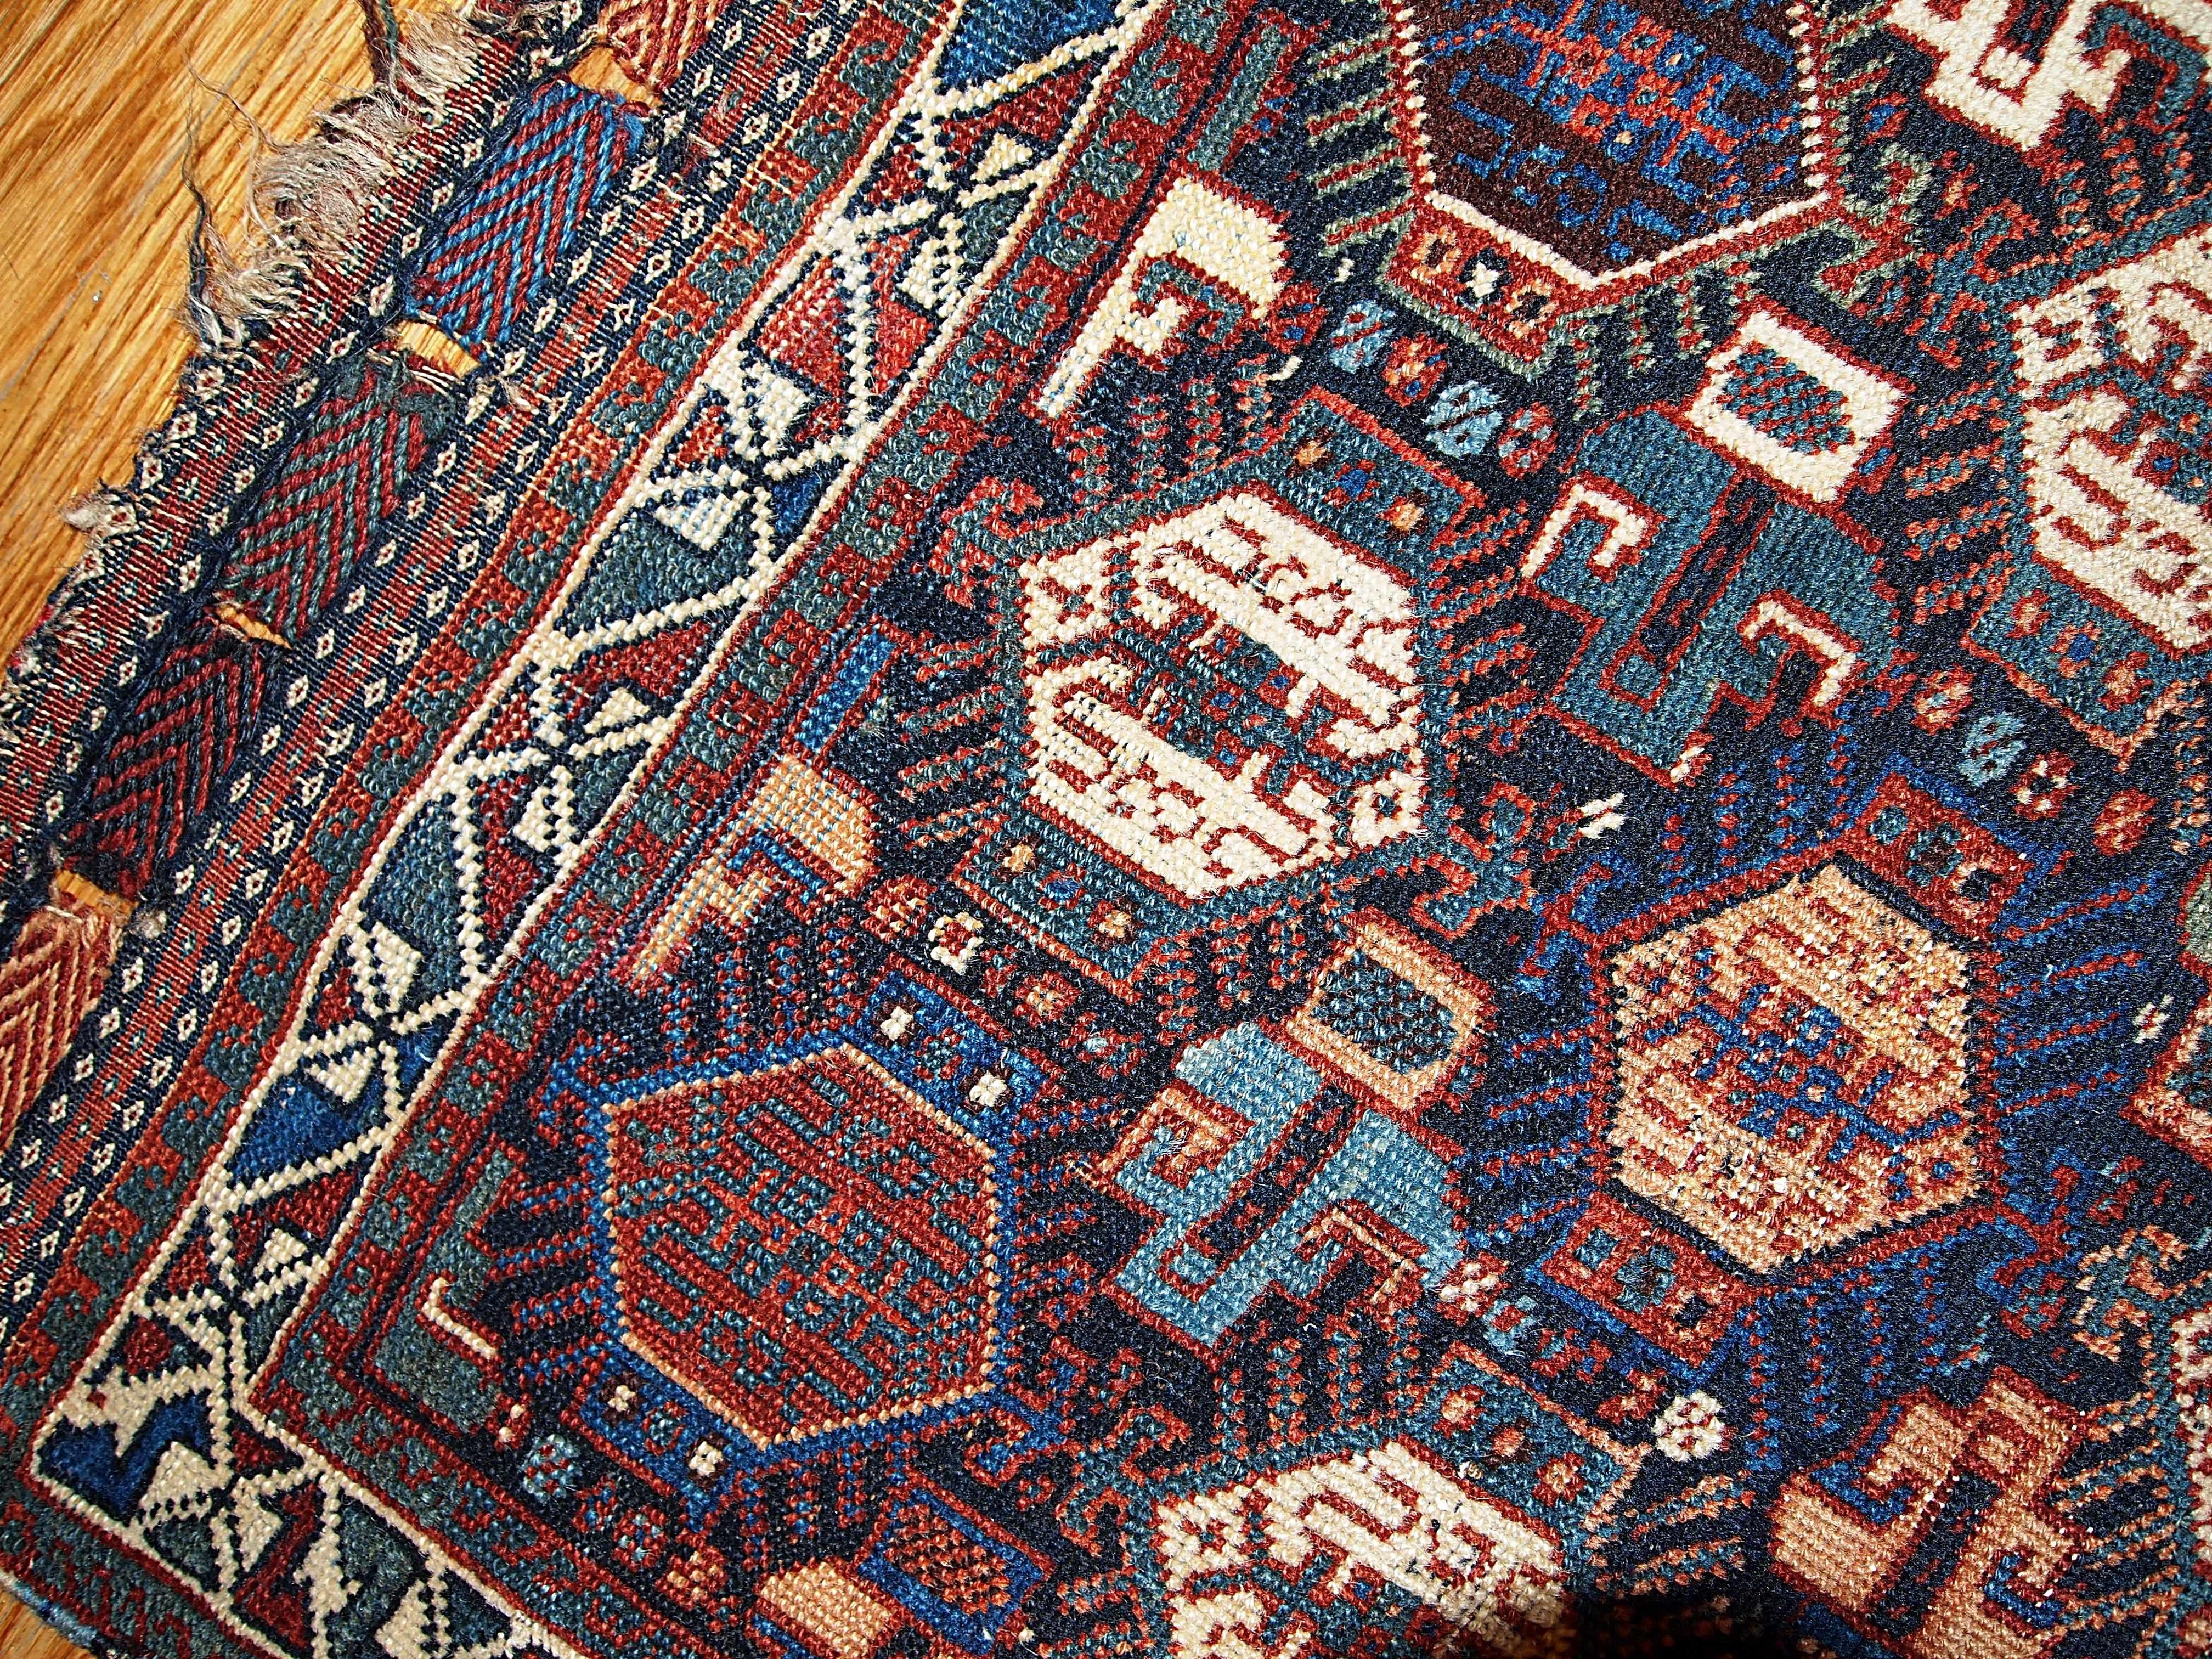 Sammeltasche im Khamseh-Stil mit den Maßen 1,9' x 1,11' (58cm x 67cm) in marineblauen, weißen und burgunderroten Farbtönen. Dieses Sammlerstück ist in gutem Originalzustand.